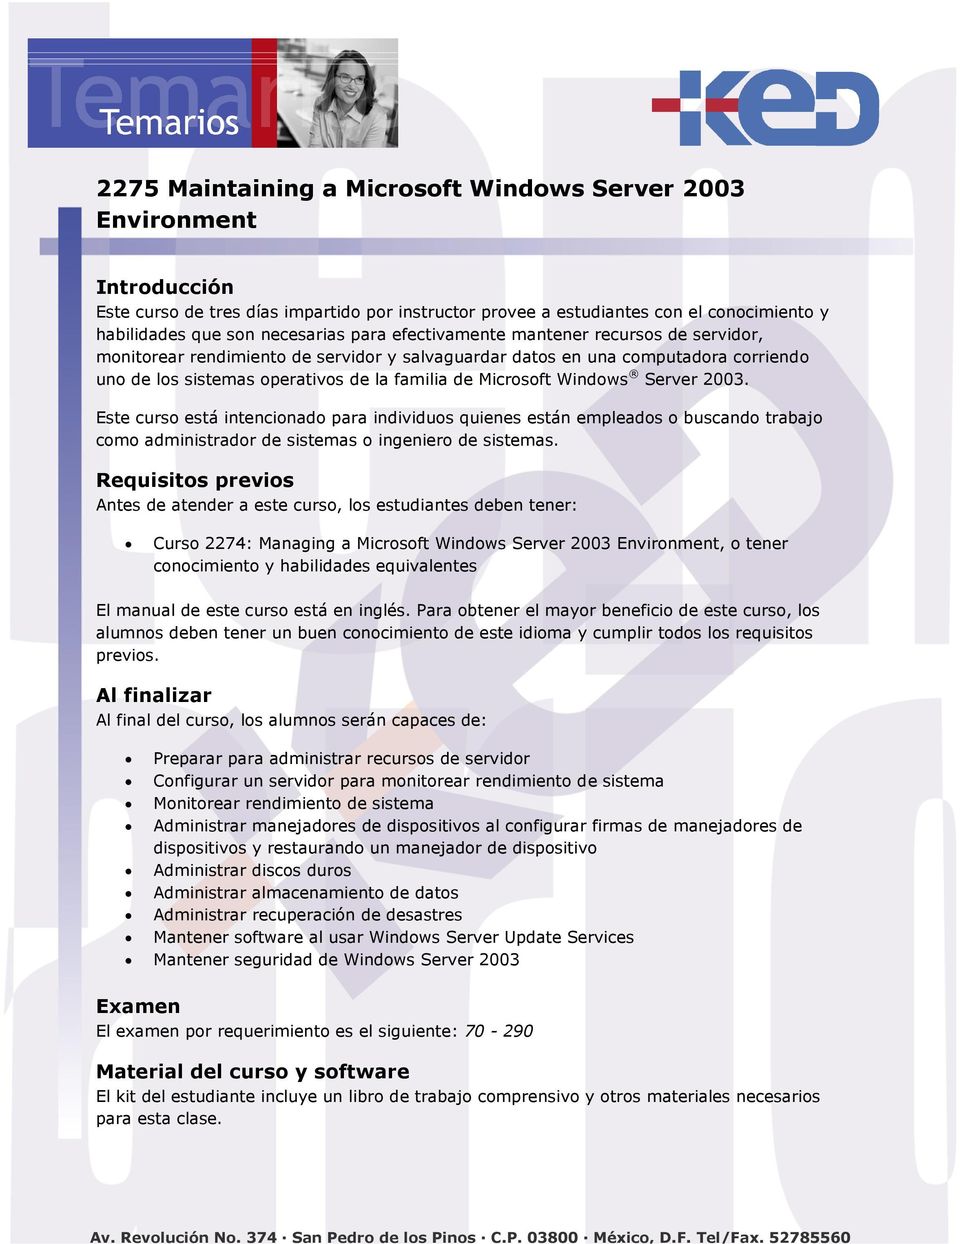 Windows Server 2003. Este curso está intencionado para individuos quienes están empleados o buscando trabajo como administrador de sistemas o ingeniero de sistemas.